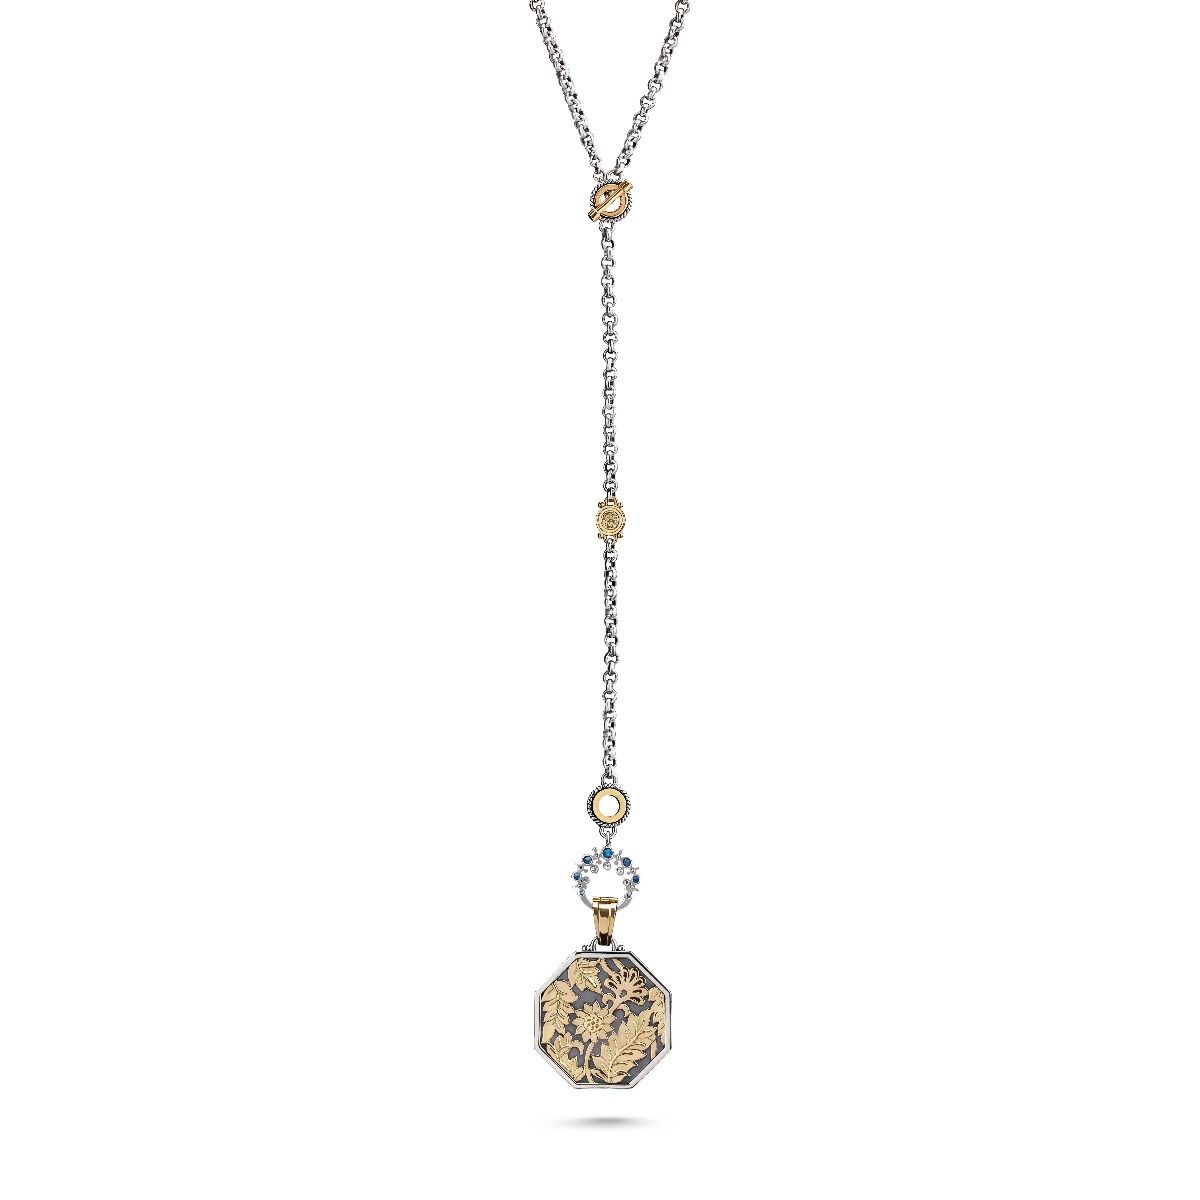 Victorian Necklace by Azza Fahmy - Designer Necklaces